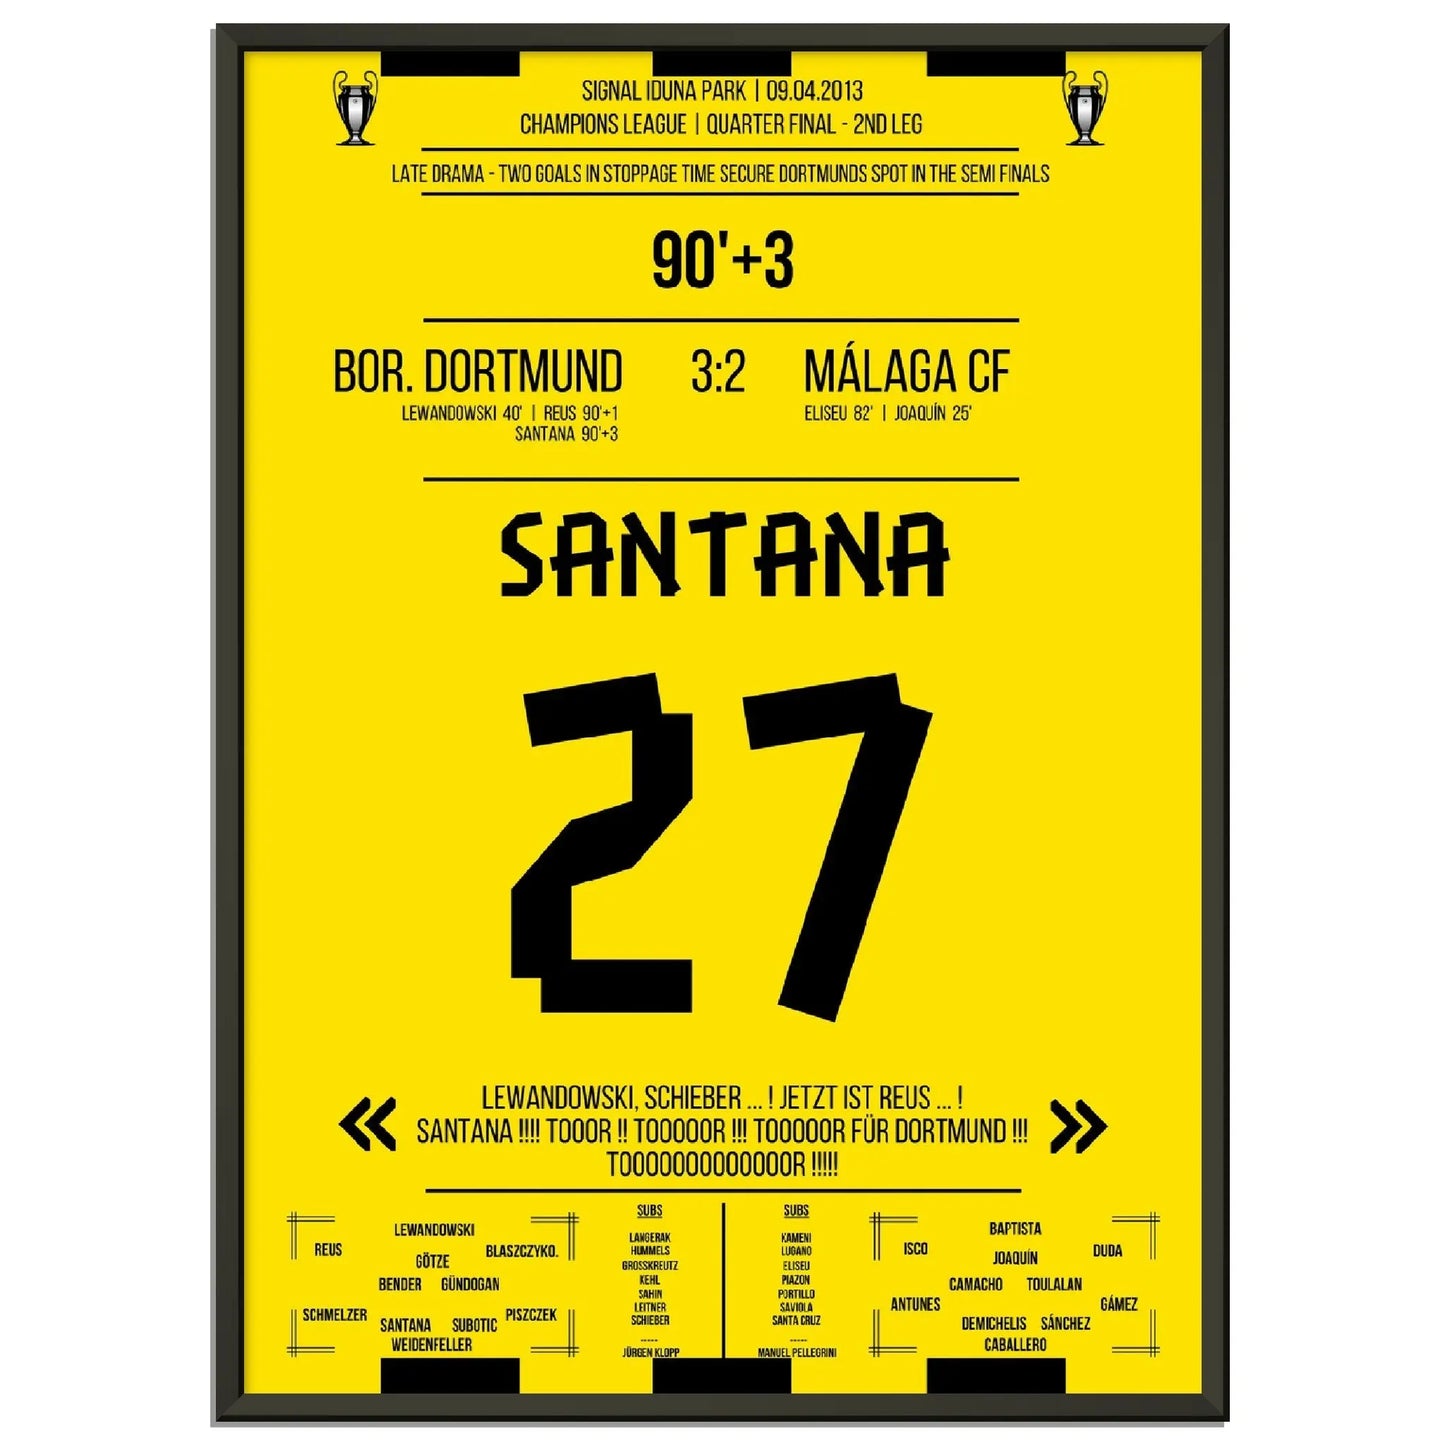 Santana's Siegtreffer bei Dortmunds sensationeller Aufholjagd gegen Malaga Champions League 2012/2013 